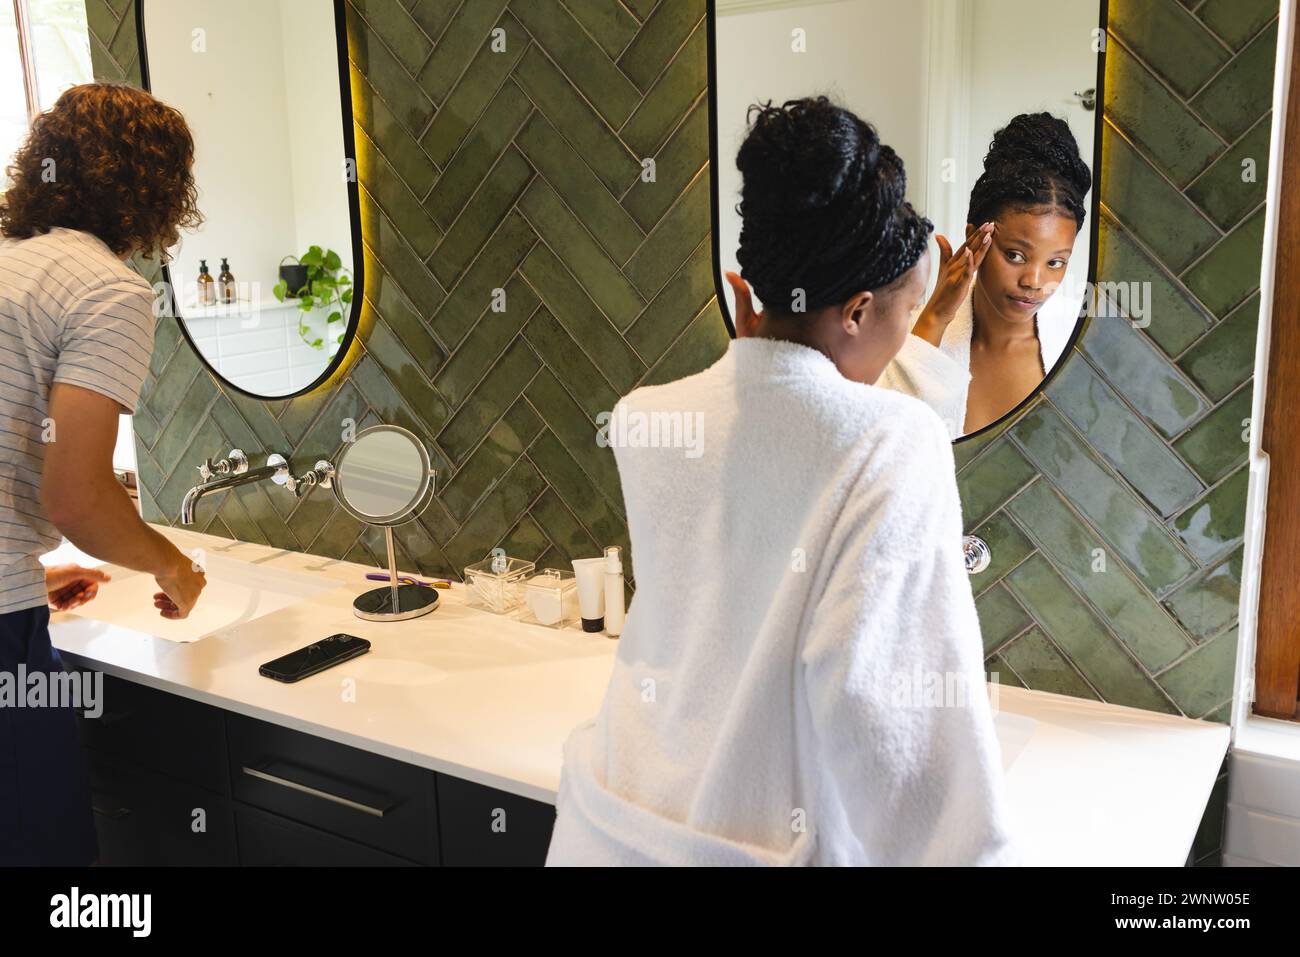 Couple diversifié : jeune femme afro-américaine applique le maquillage dans un miroir de salle de bain Banque D'Images